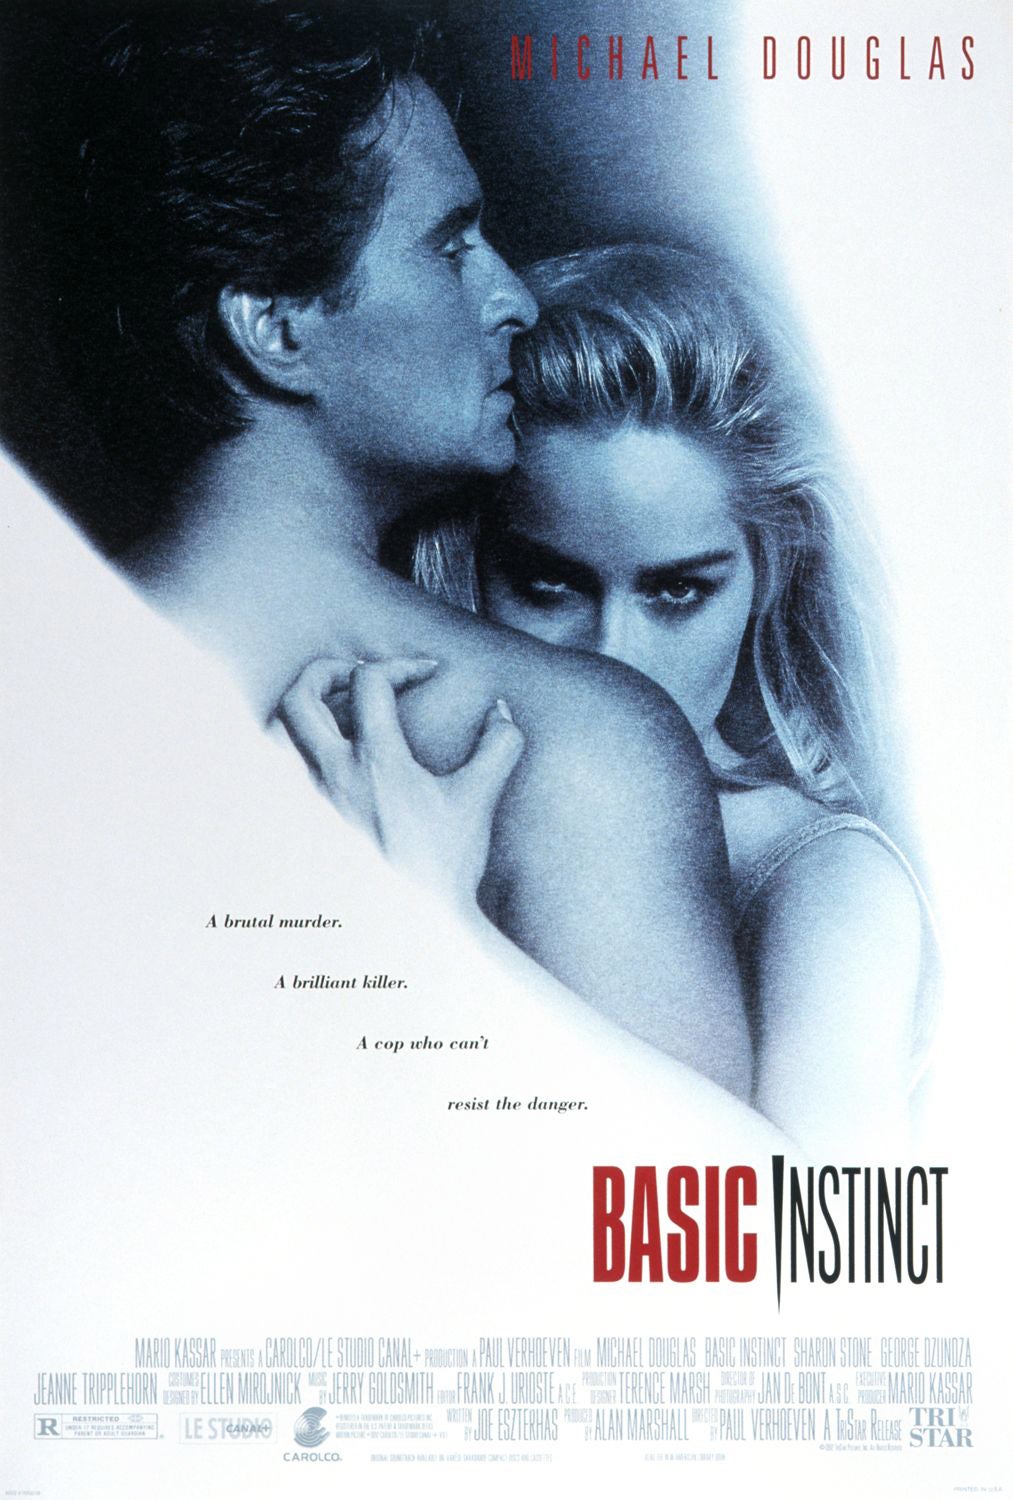 The original poster artwork for ‘Basic Instinct’